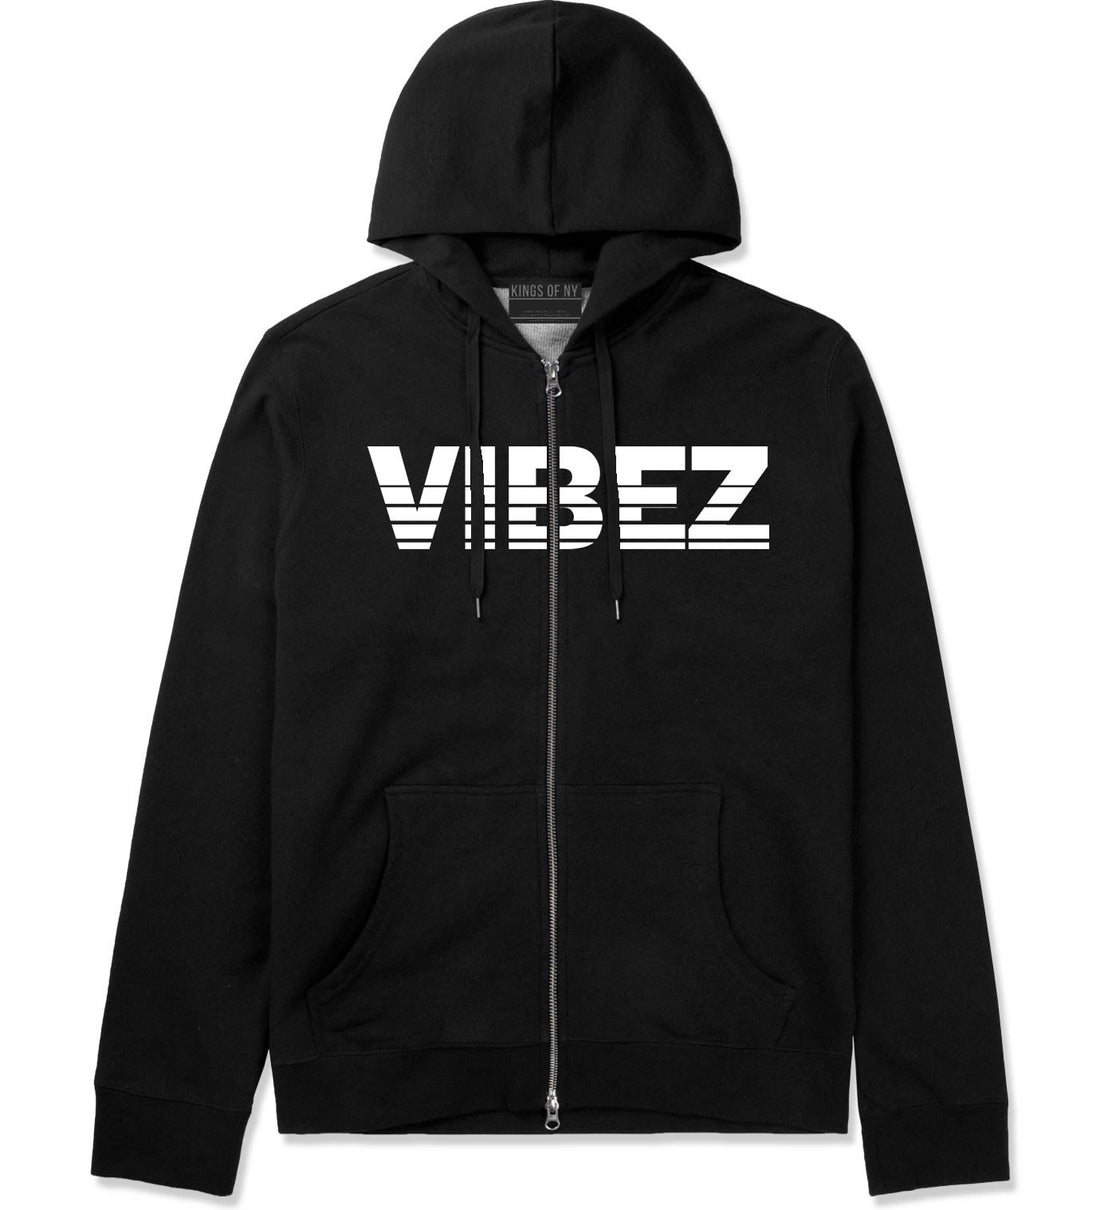 VIBEZ Racing Style Zip Up Hoodie Hoody in Black by Kings Of NY